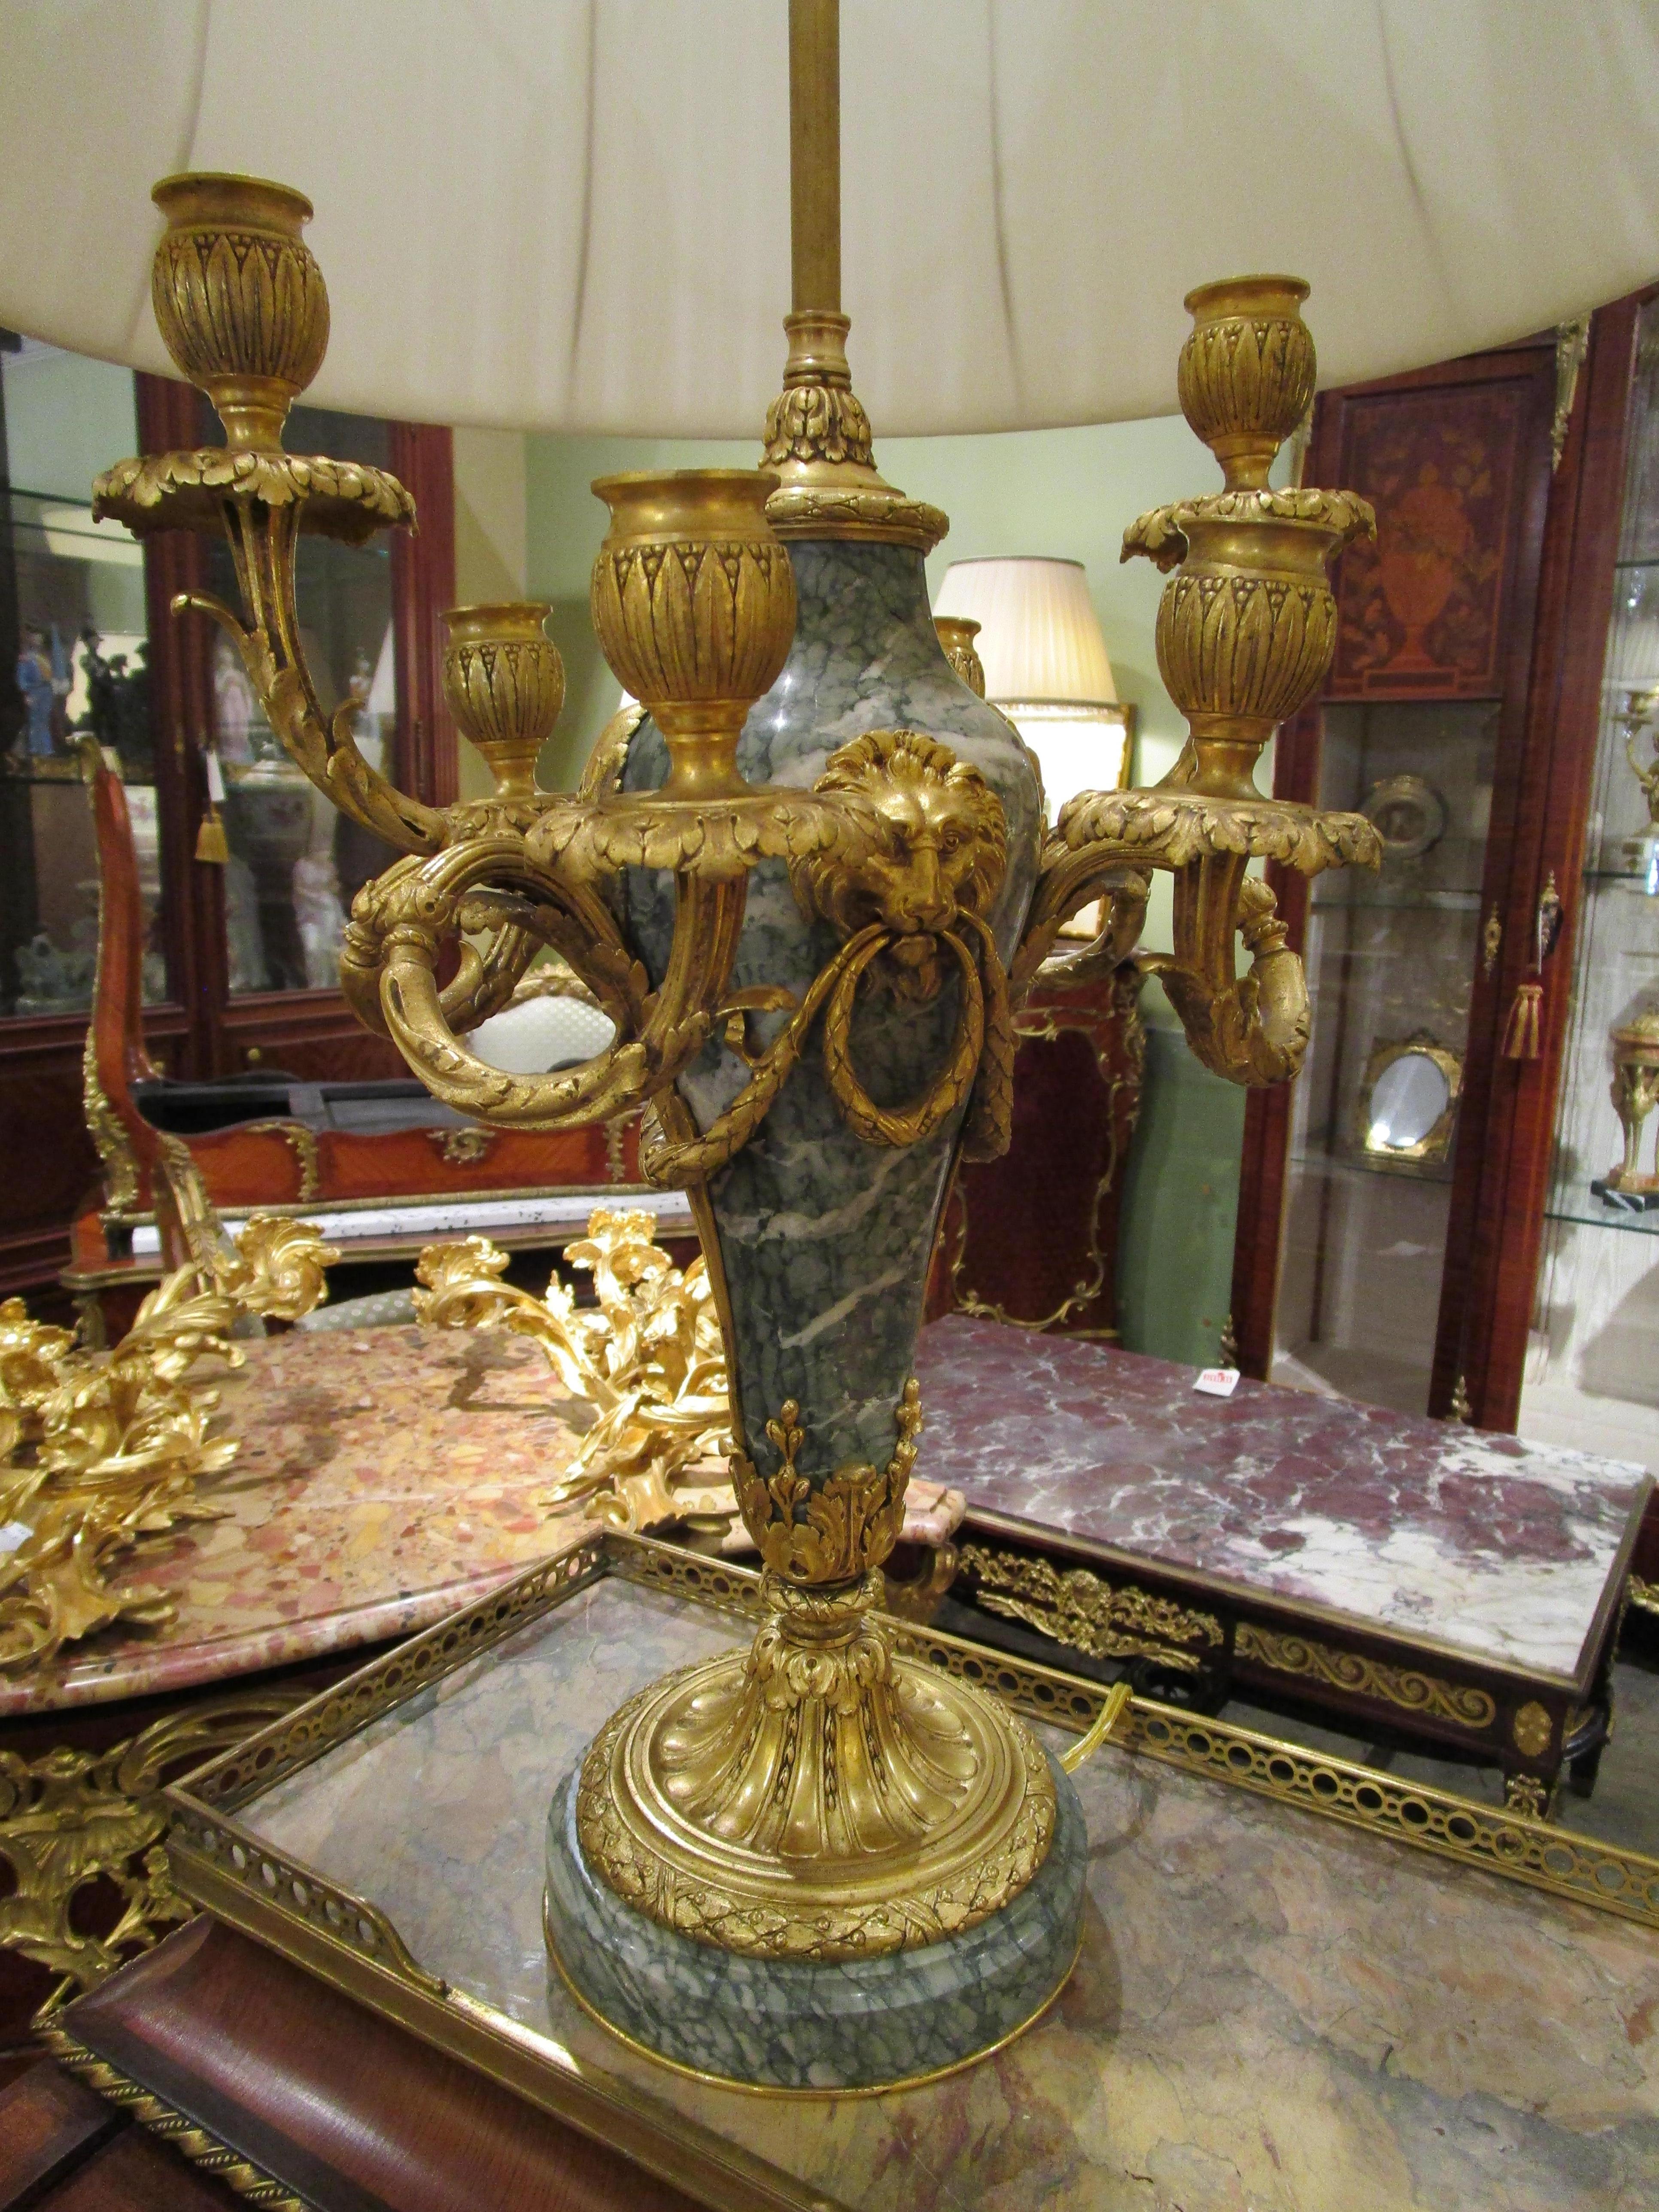 Très belle paire de lampes candélabres en marbre et bronze doré de style Louis XVI du XIXe siècle. Les détails en bronze doré les plus fins sont ceux d'un masque à tête de lion. Fabriqué par l'une des meilleures fonderies de France au XIXe siècle,